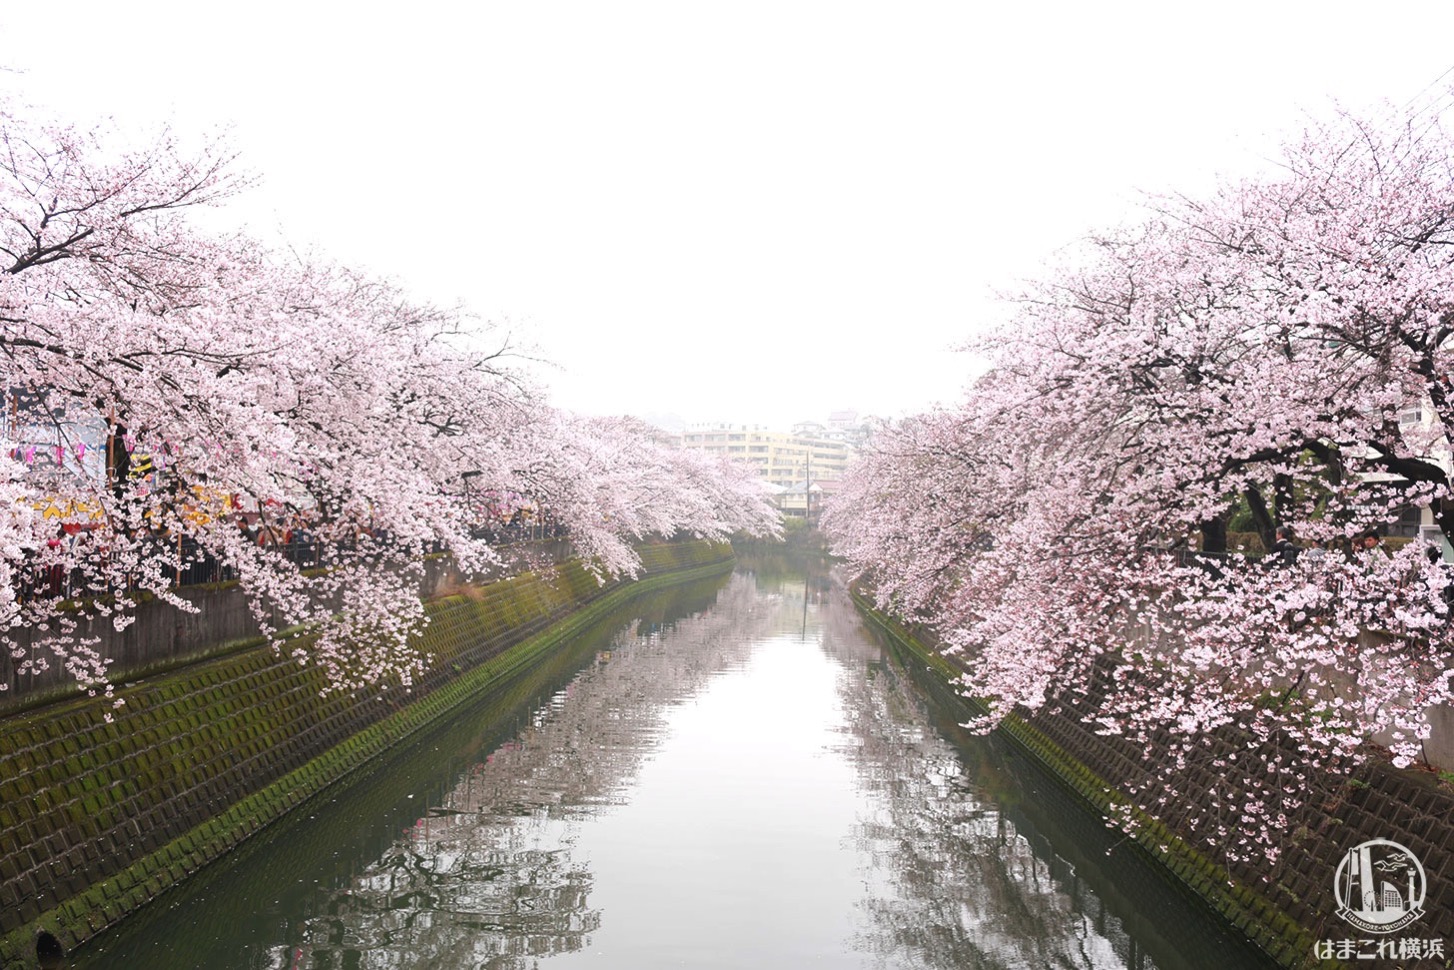 橋の上から見た大岡川の桜